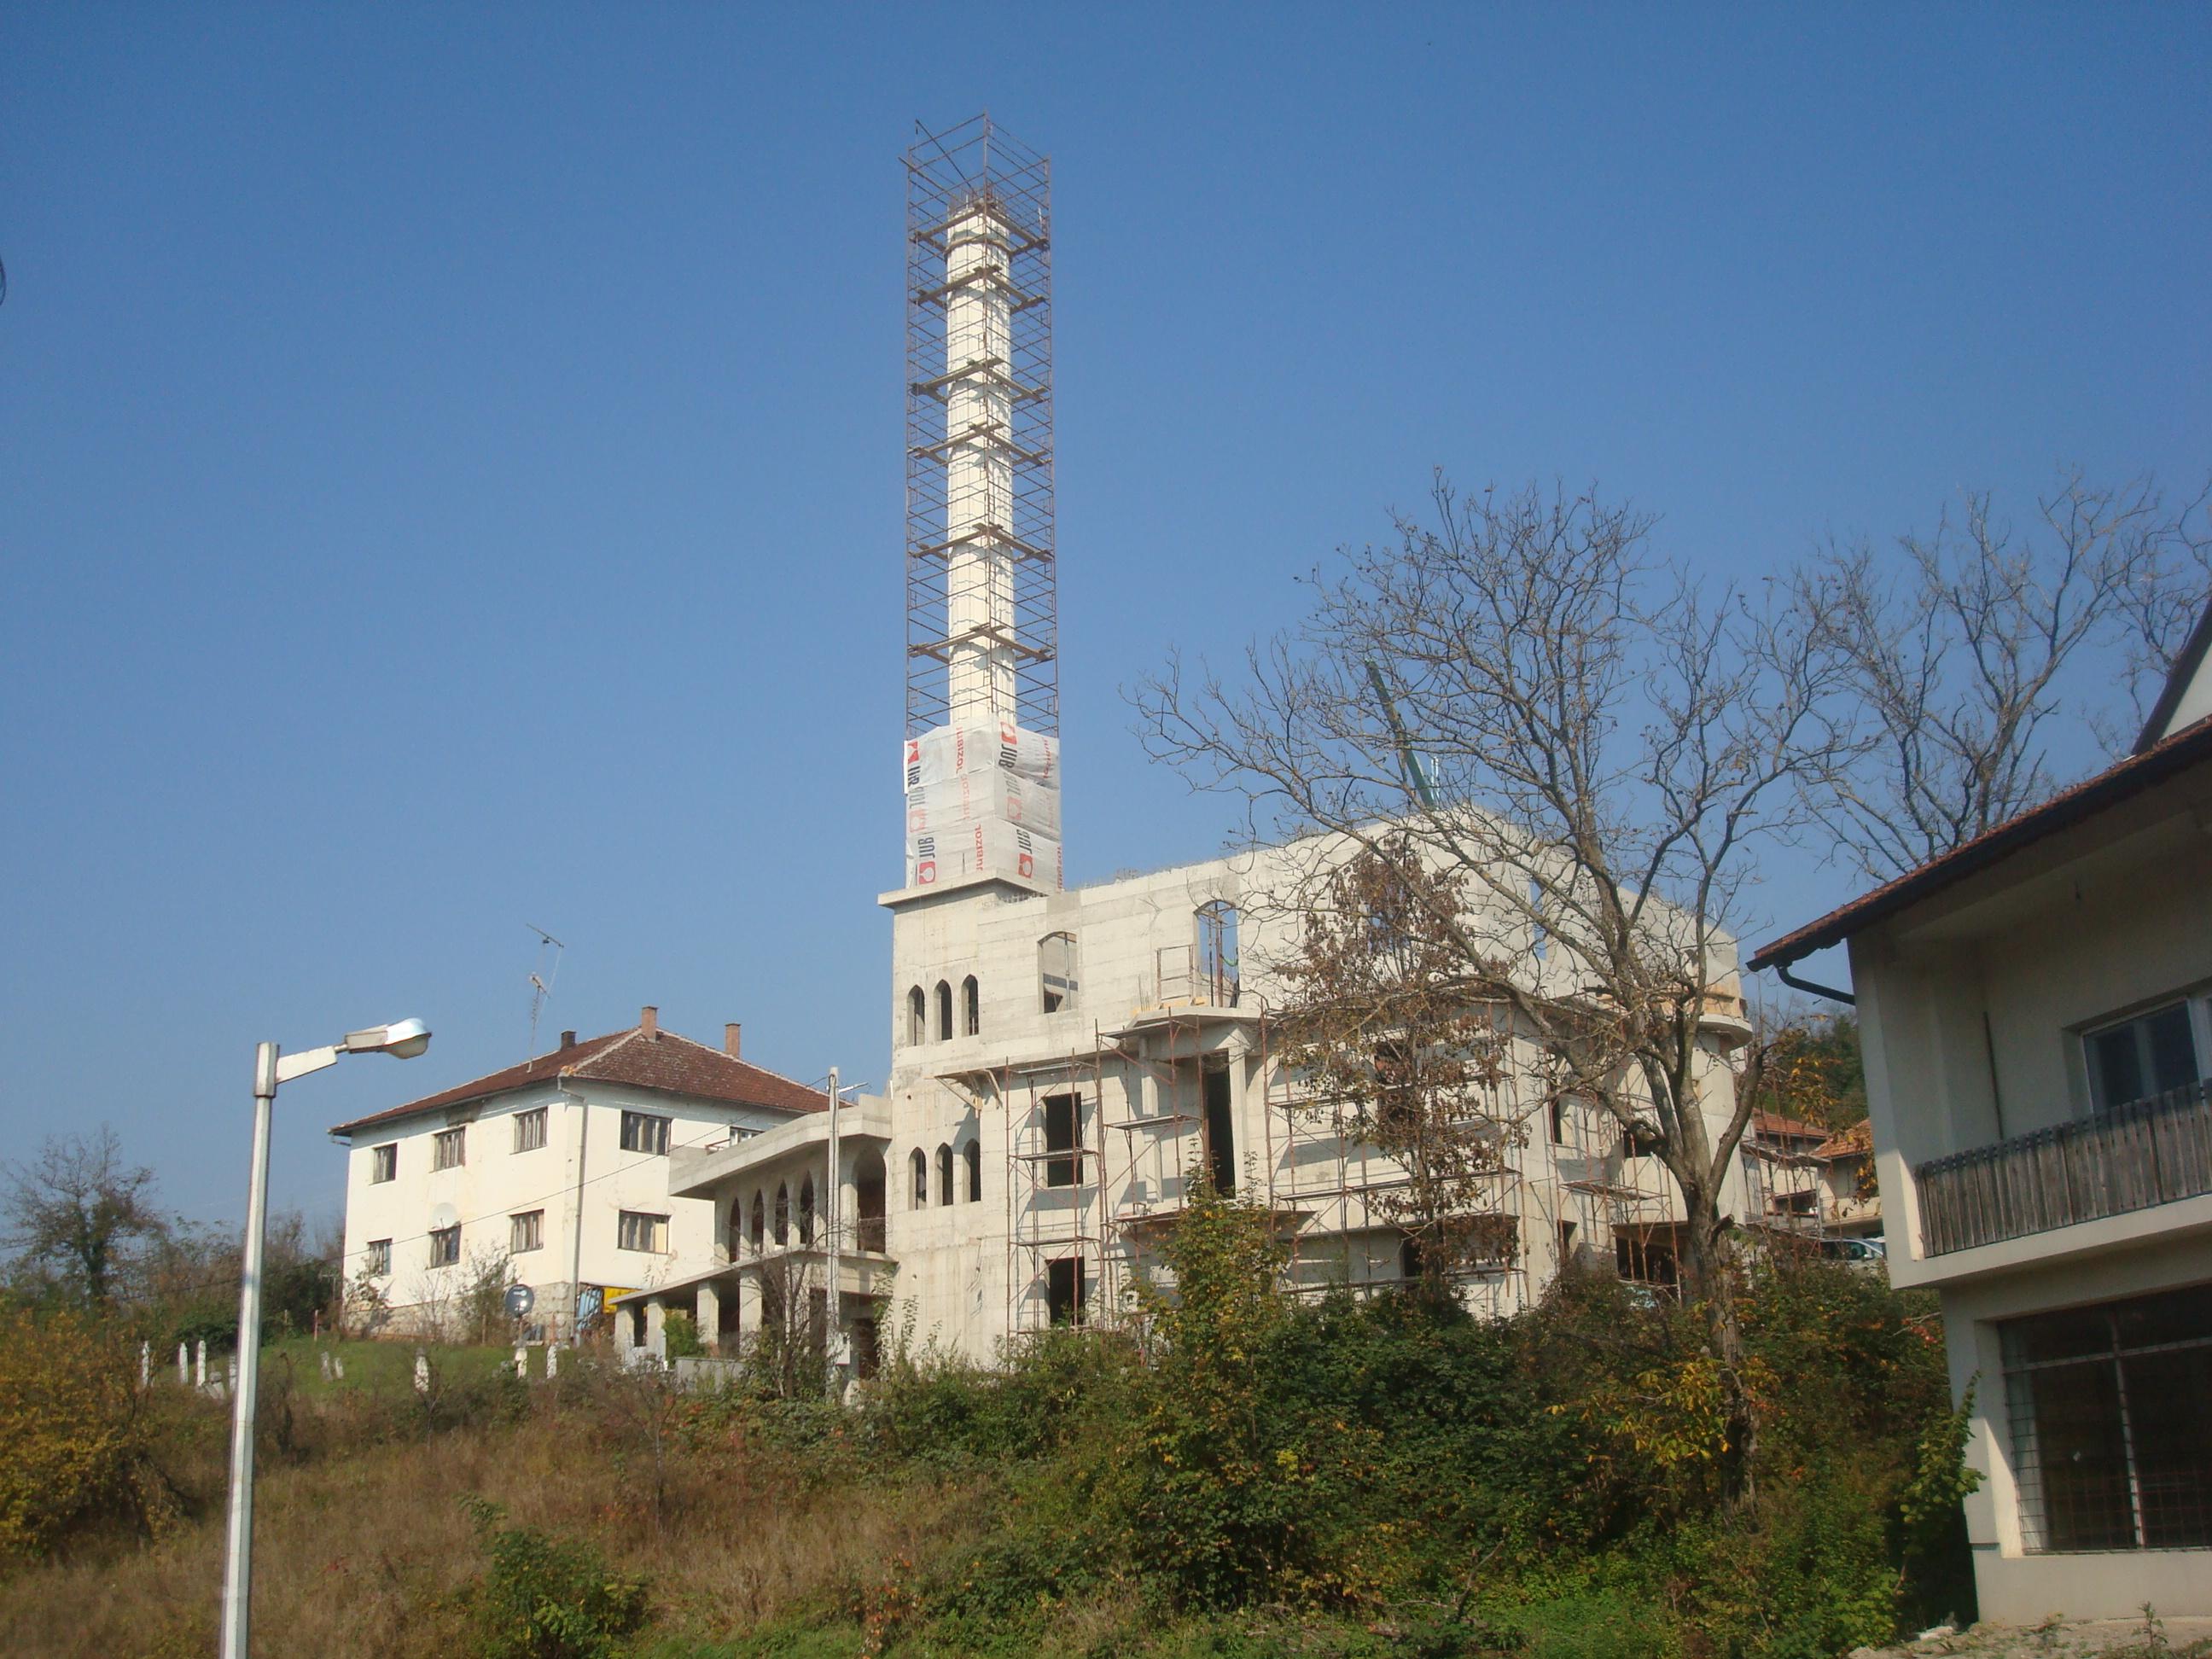 Džamija u Pećigradu imat će munaru visoku 70 metara